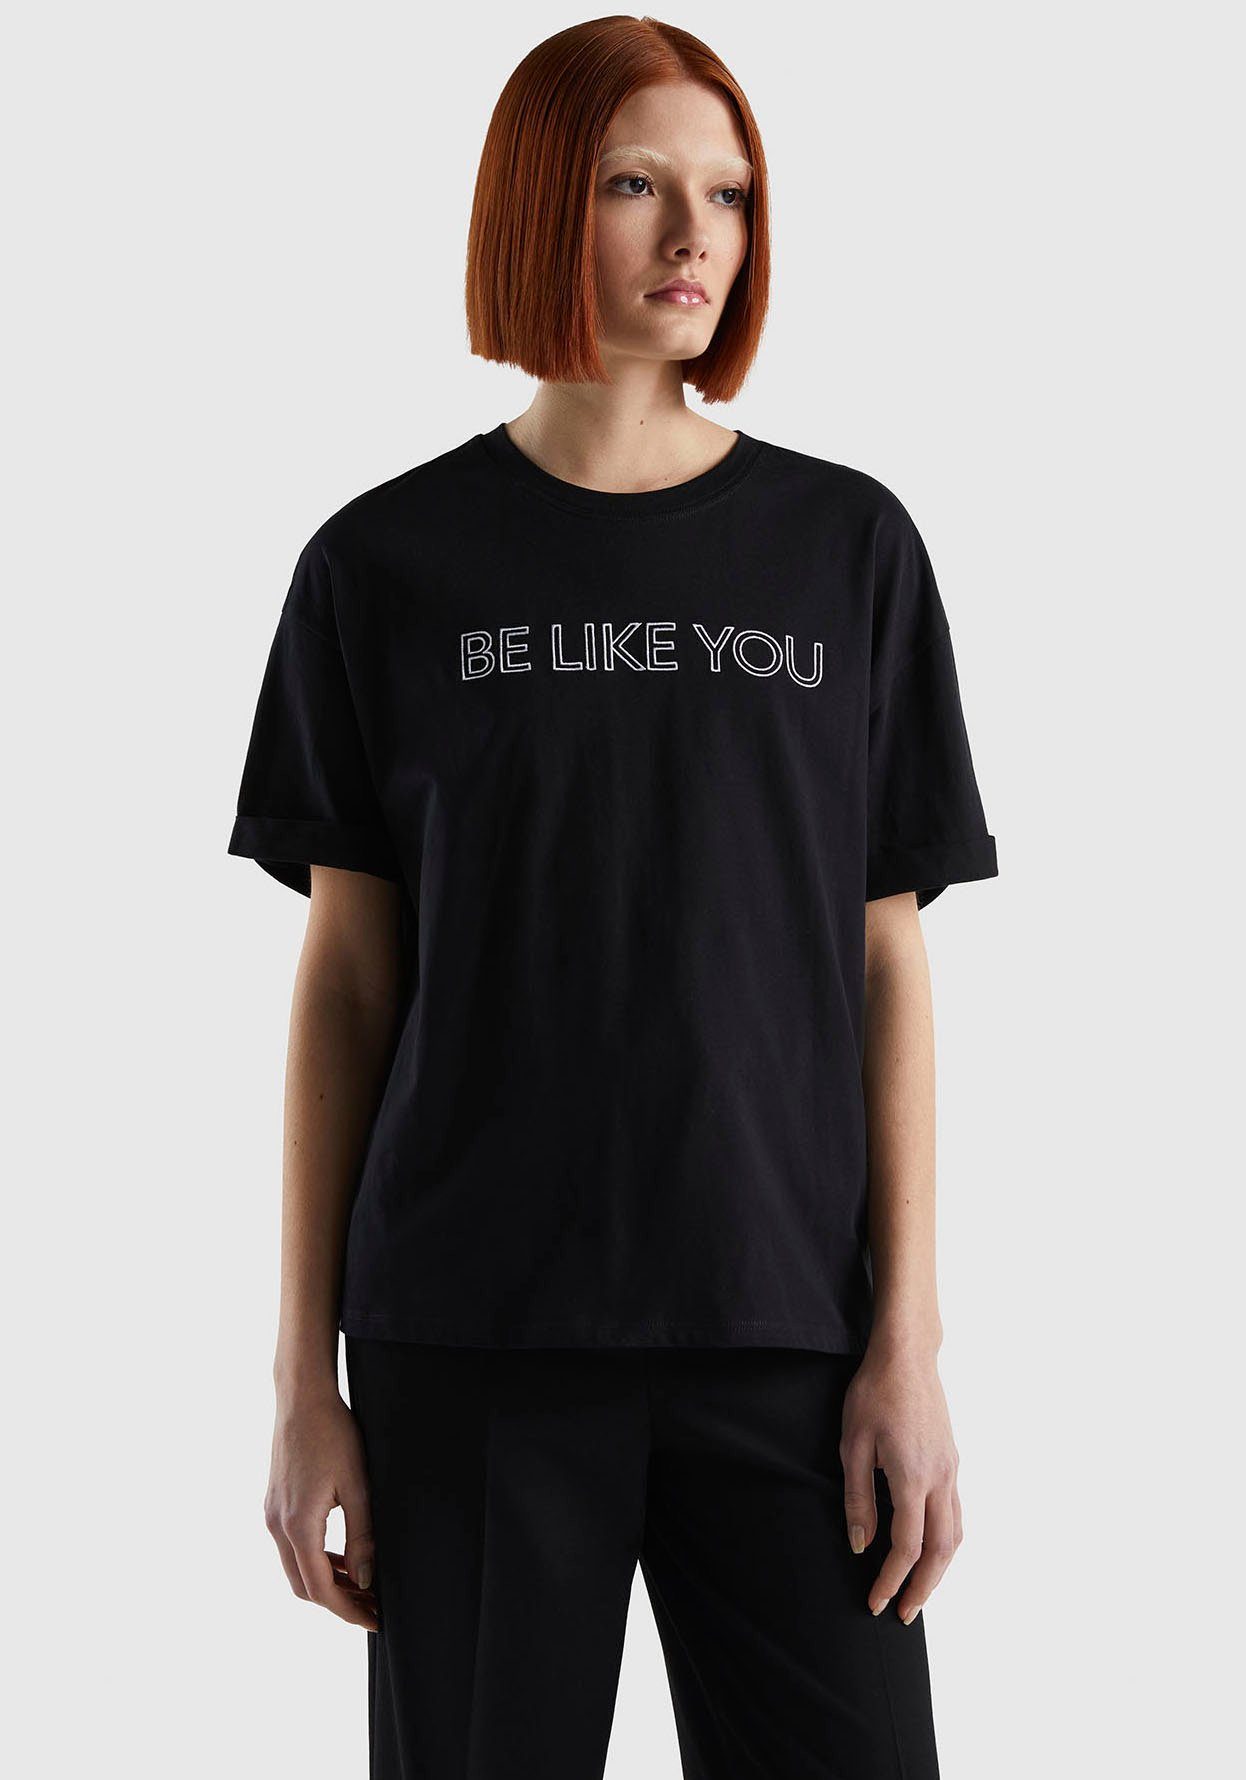 keten Distributie aanbidden United Colors of Benetton T-shirt online bestellen | OTTO